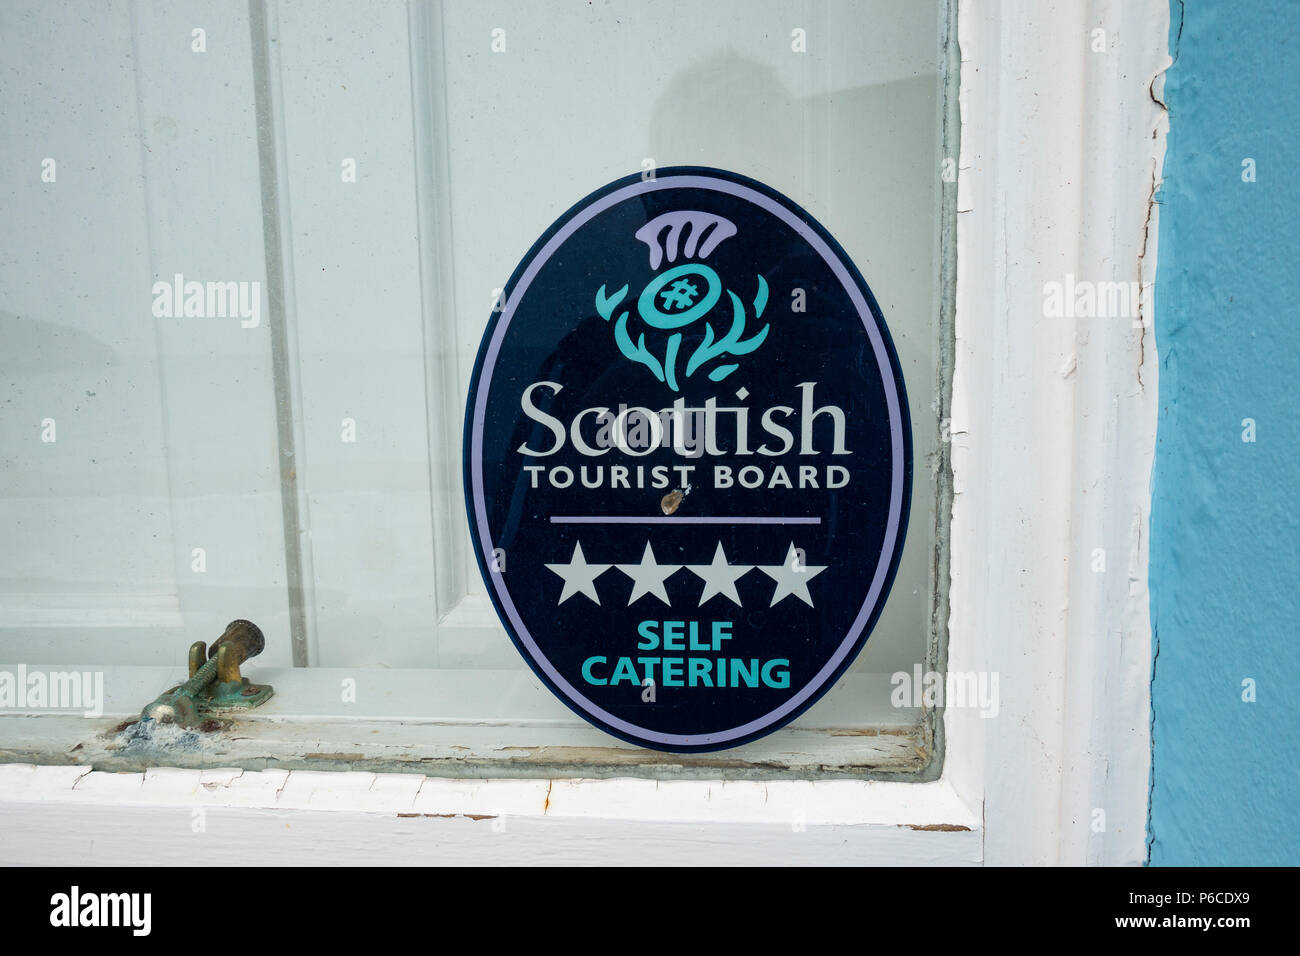 Ouvrir une guest house dans la fenêtre village écossais montrant c'est un self catering guest house et une partie de l'office du tourisme écossais scheme Banque D'Images